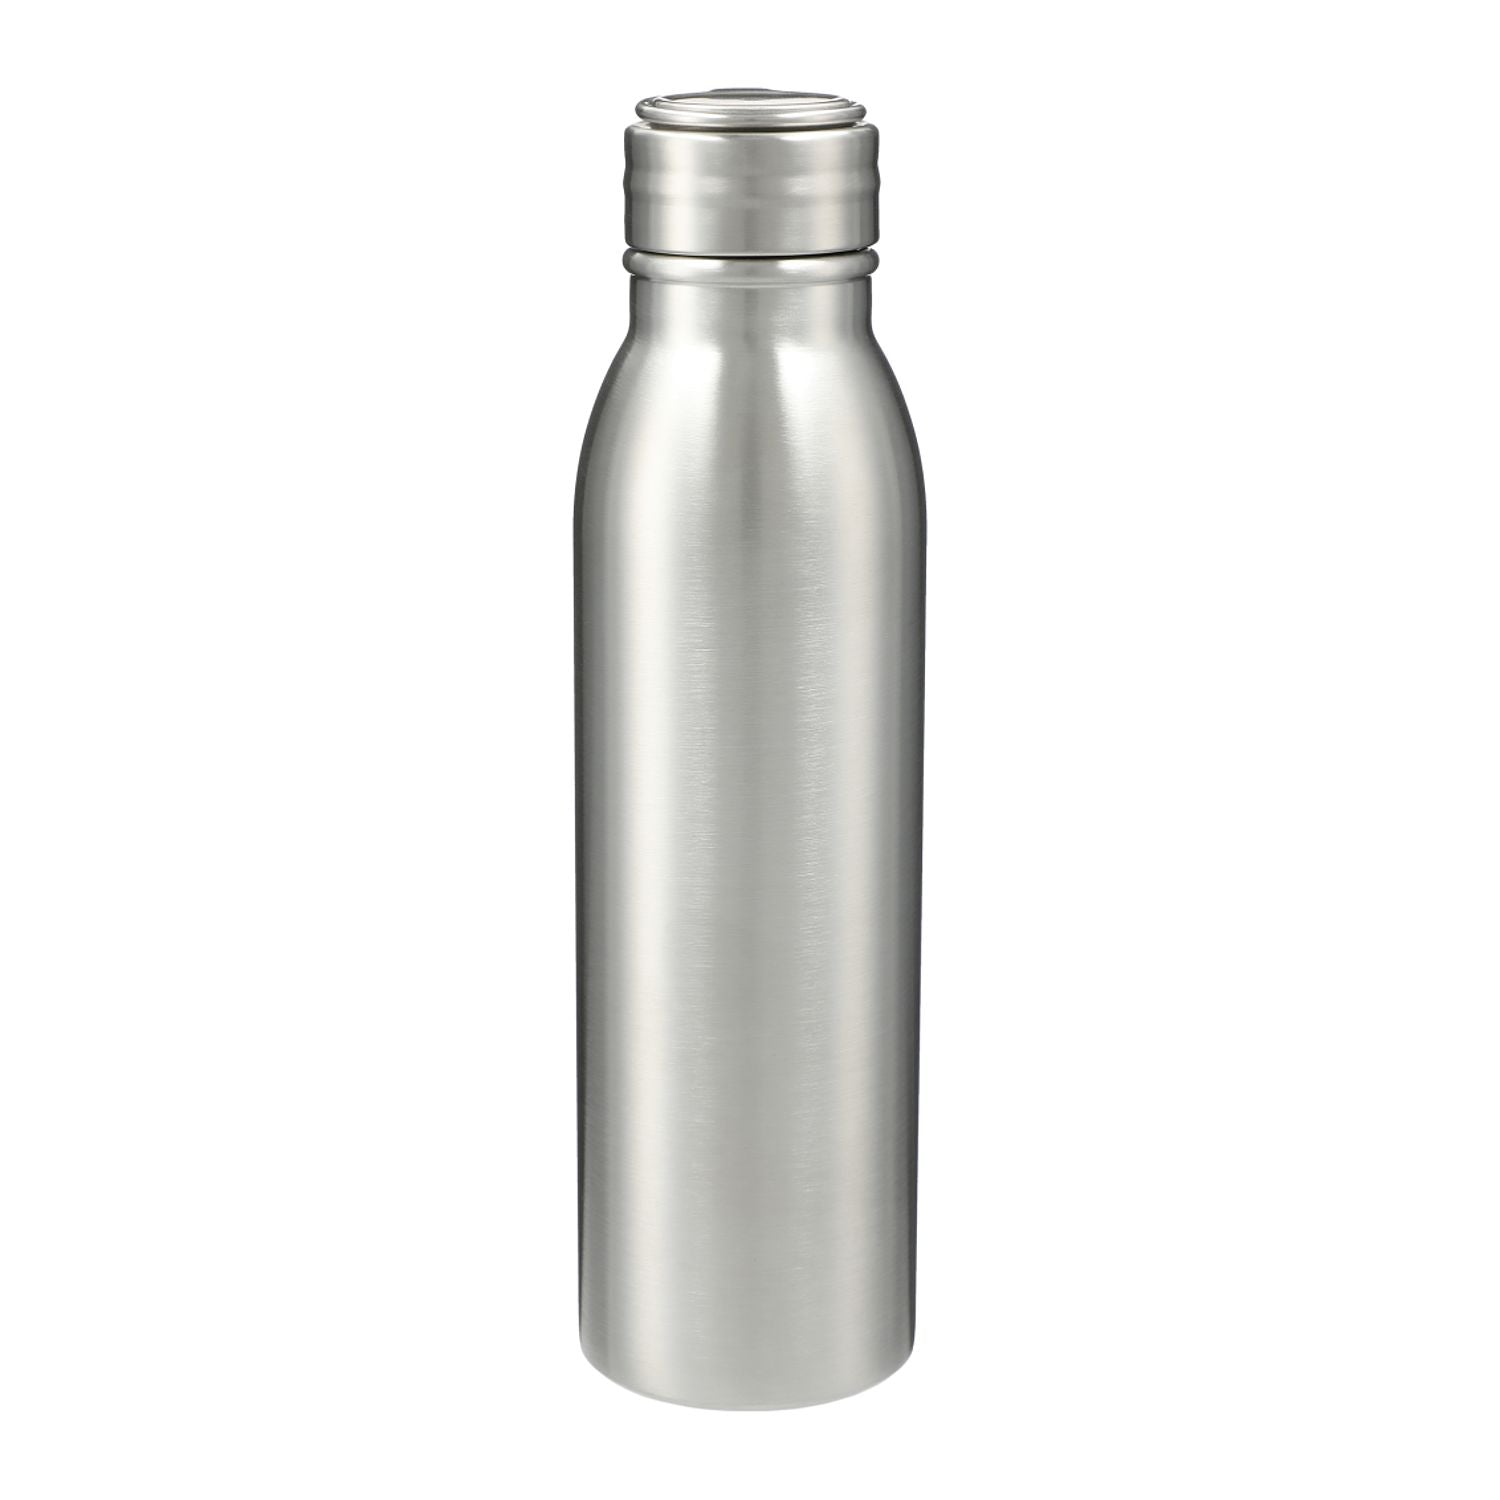 Vida 24oz Stainless Steel Single-Walled Bottle in silver